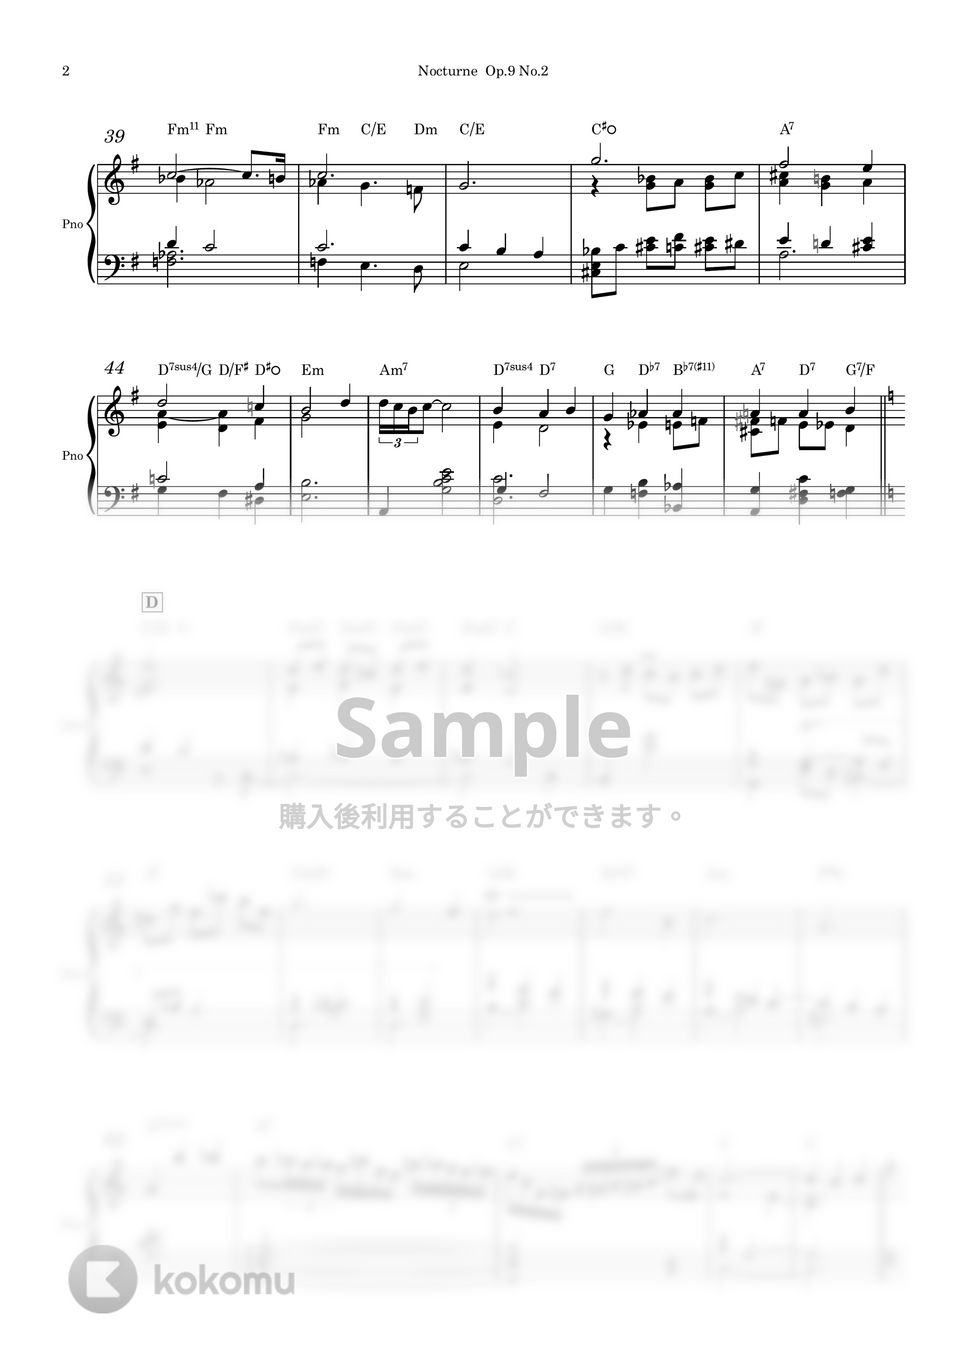 ショパン - ノクターン Op.9 No.2 (ピアノソロ用楽譜) by Piano QQQ